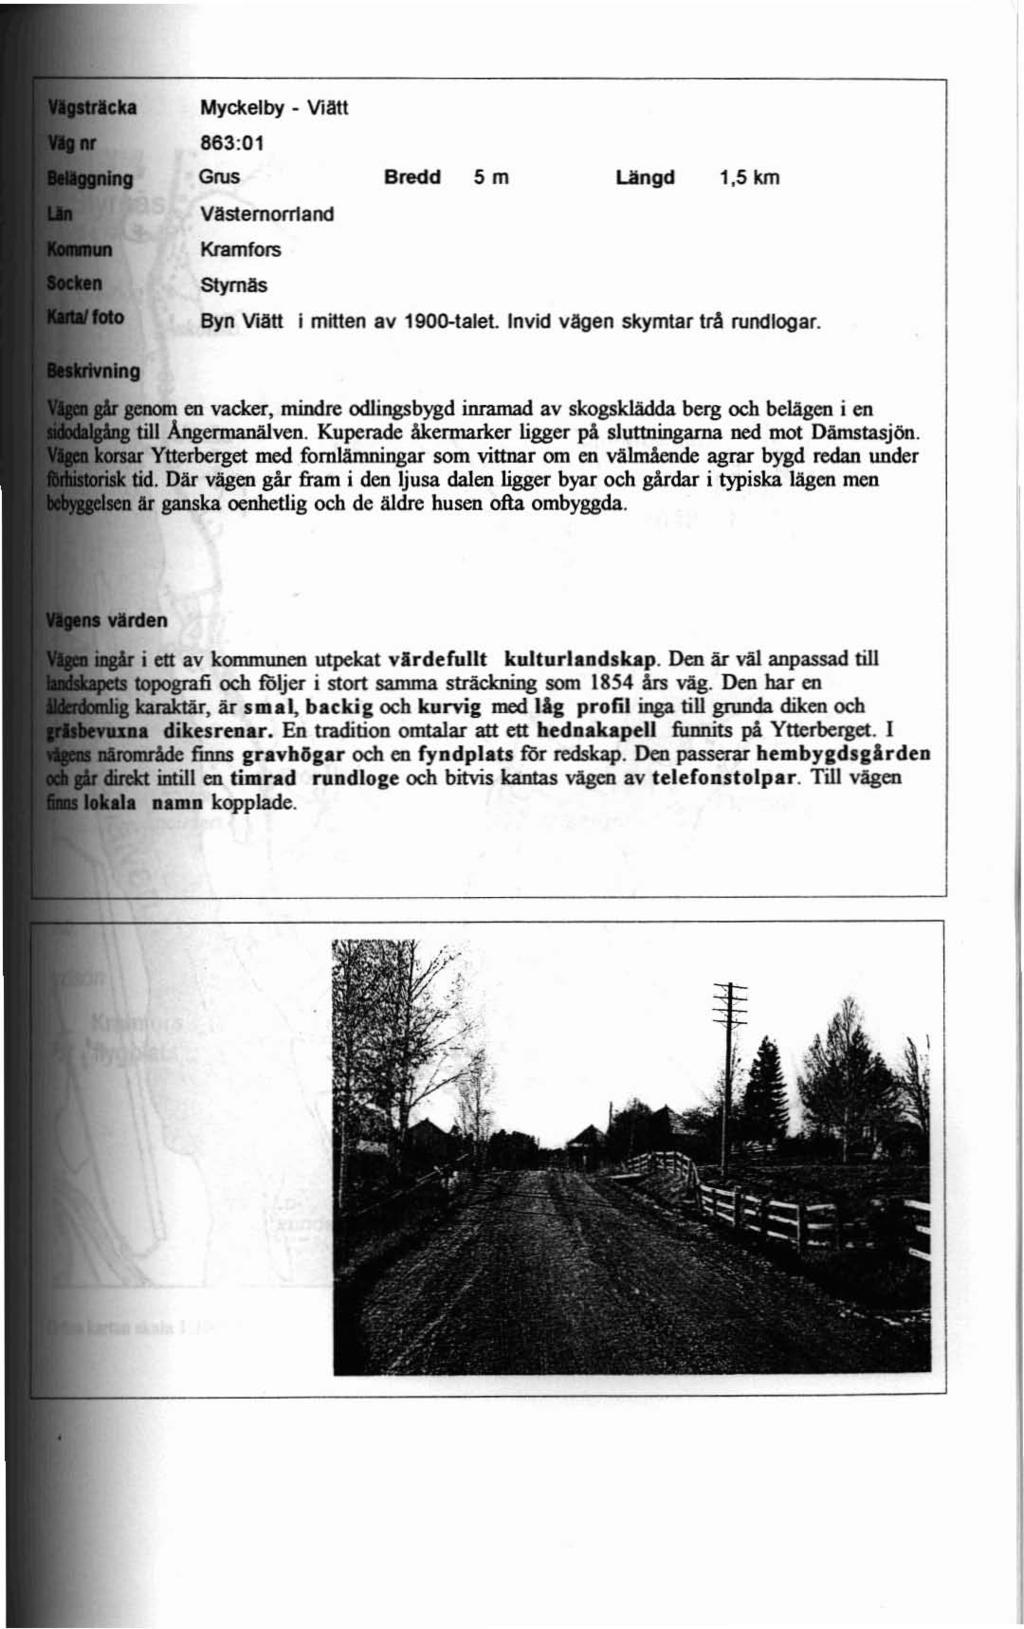 Mycl<elby - Viatt 883:01 Grus Vastemon1and Kramfors Stymas Bredd 5 m Längd 1,5 km Byn Via«l mitten av 1900-talel ln vid vagen skymtar bi rundlogar.